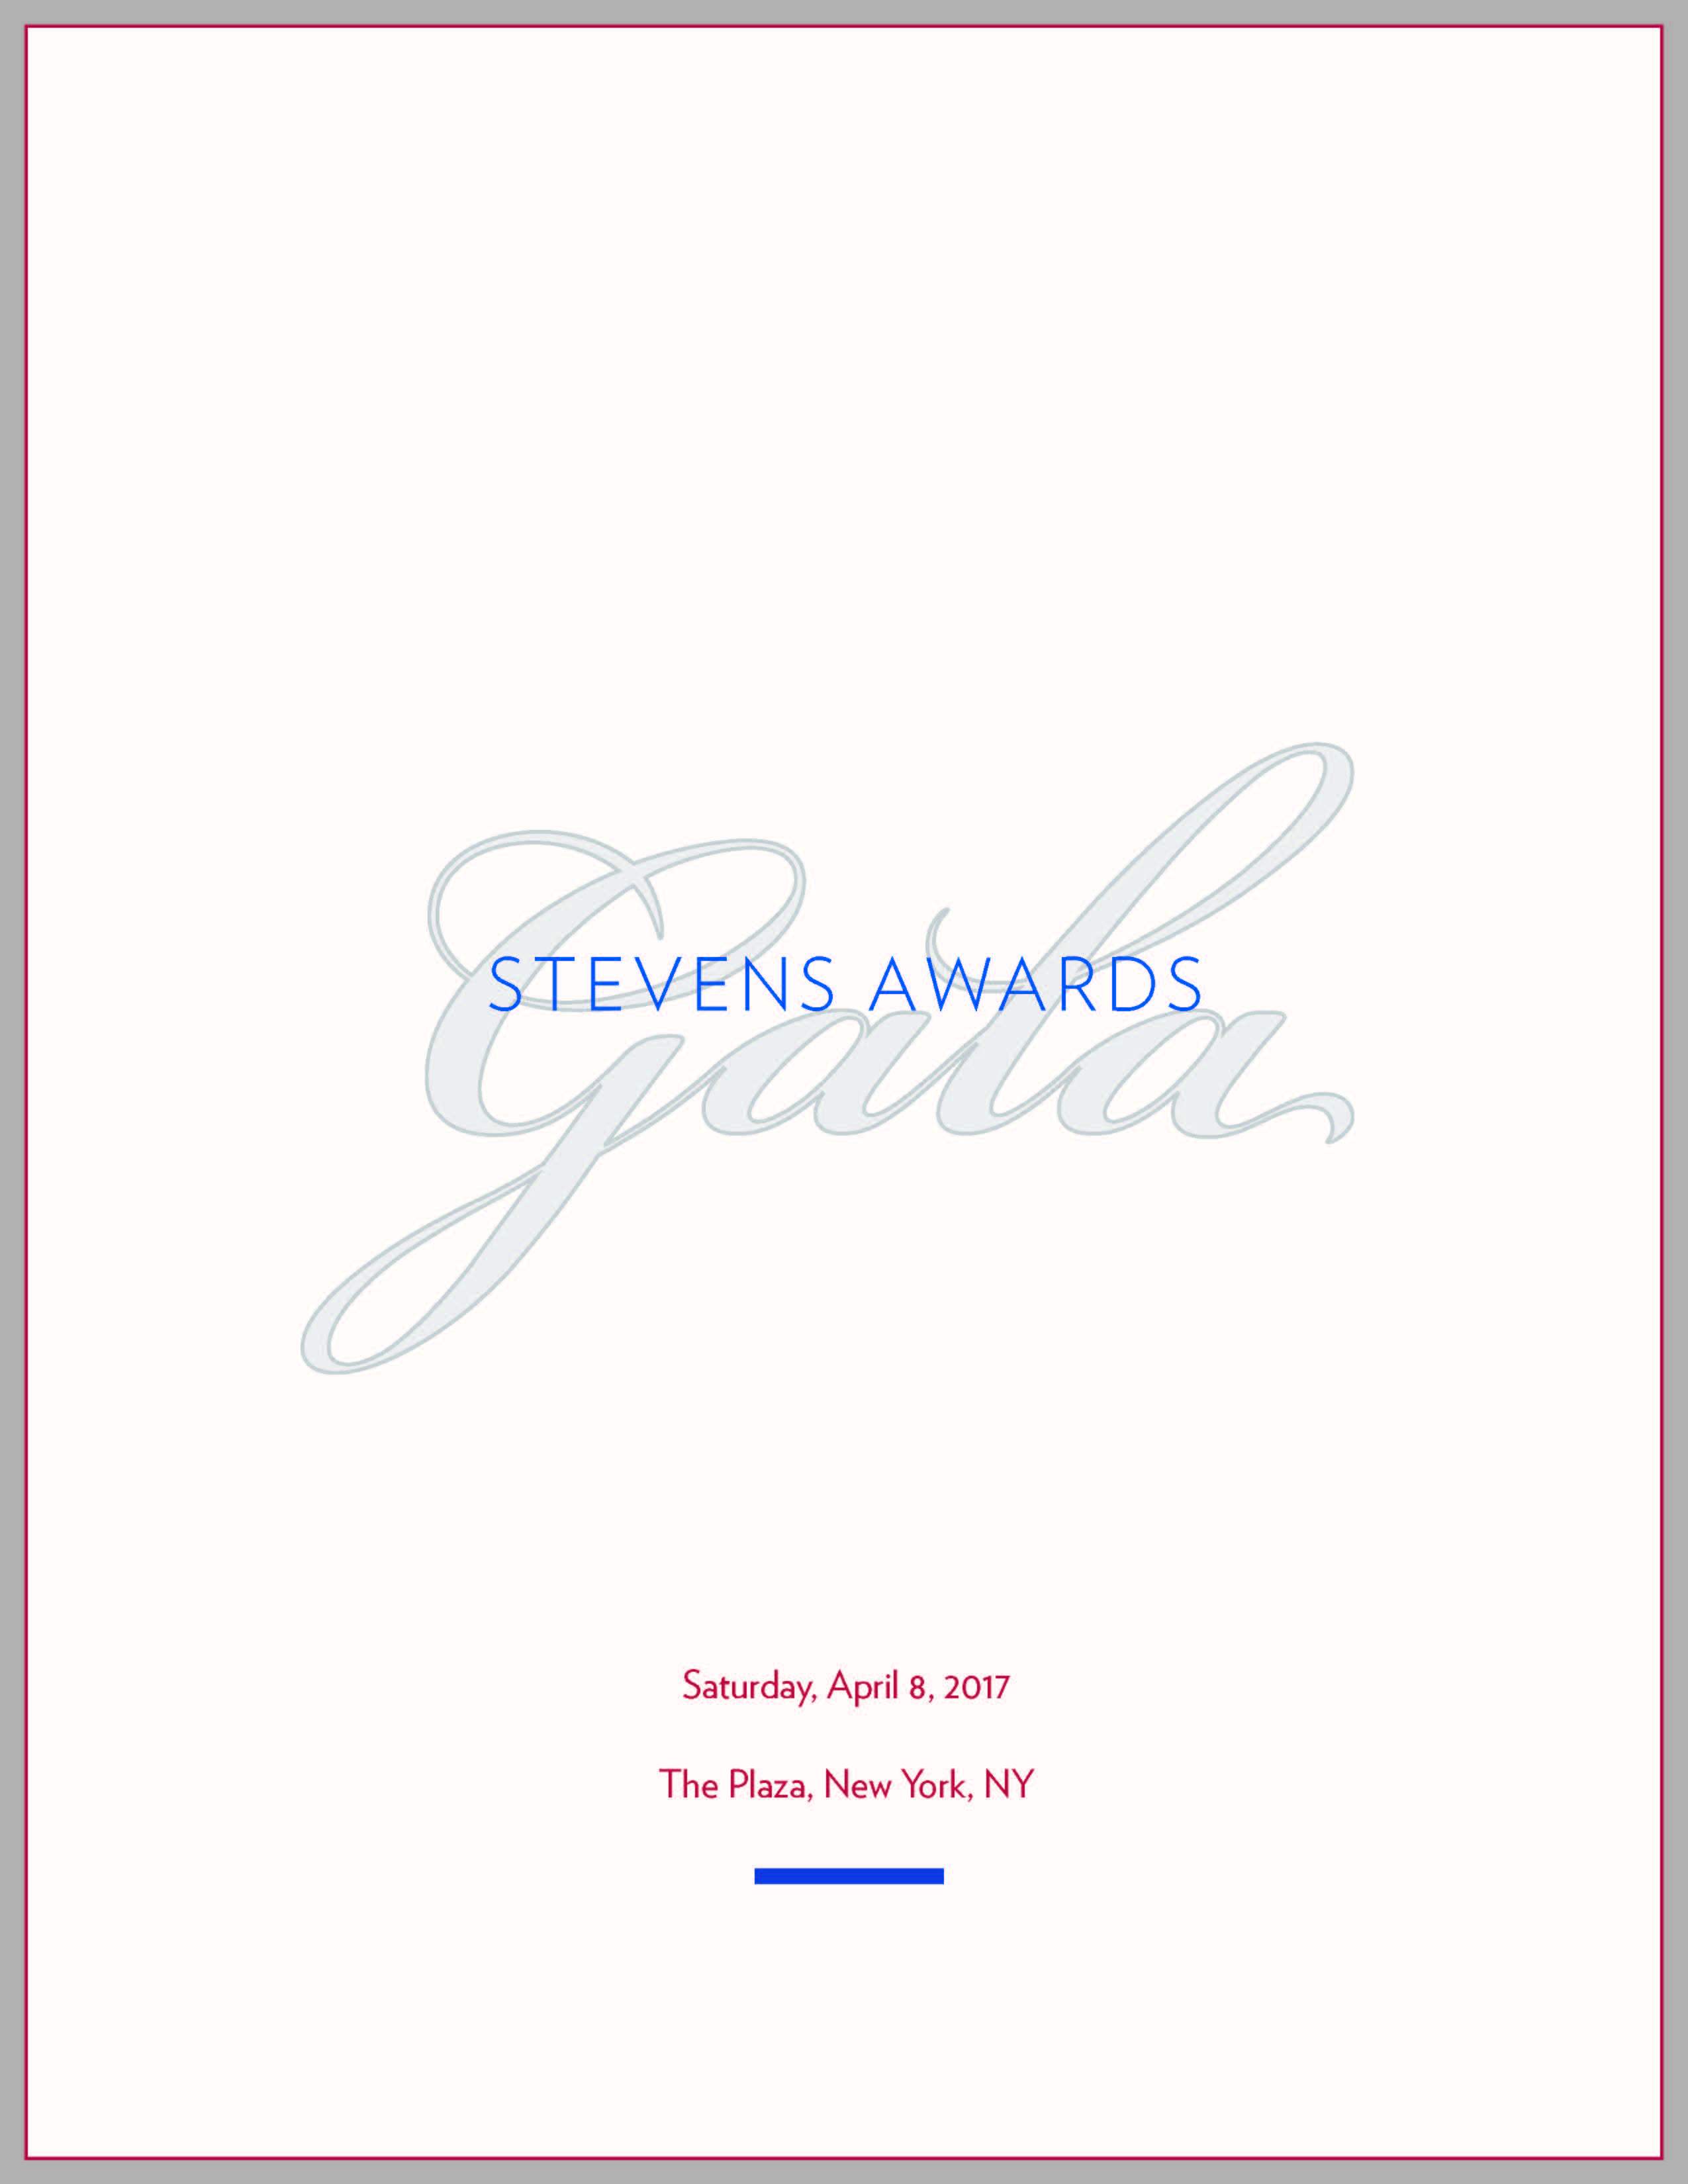 Program for the Fourth Stevens Awards Gala